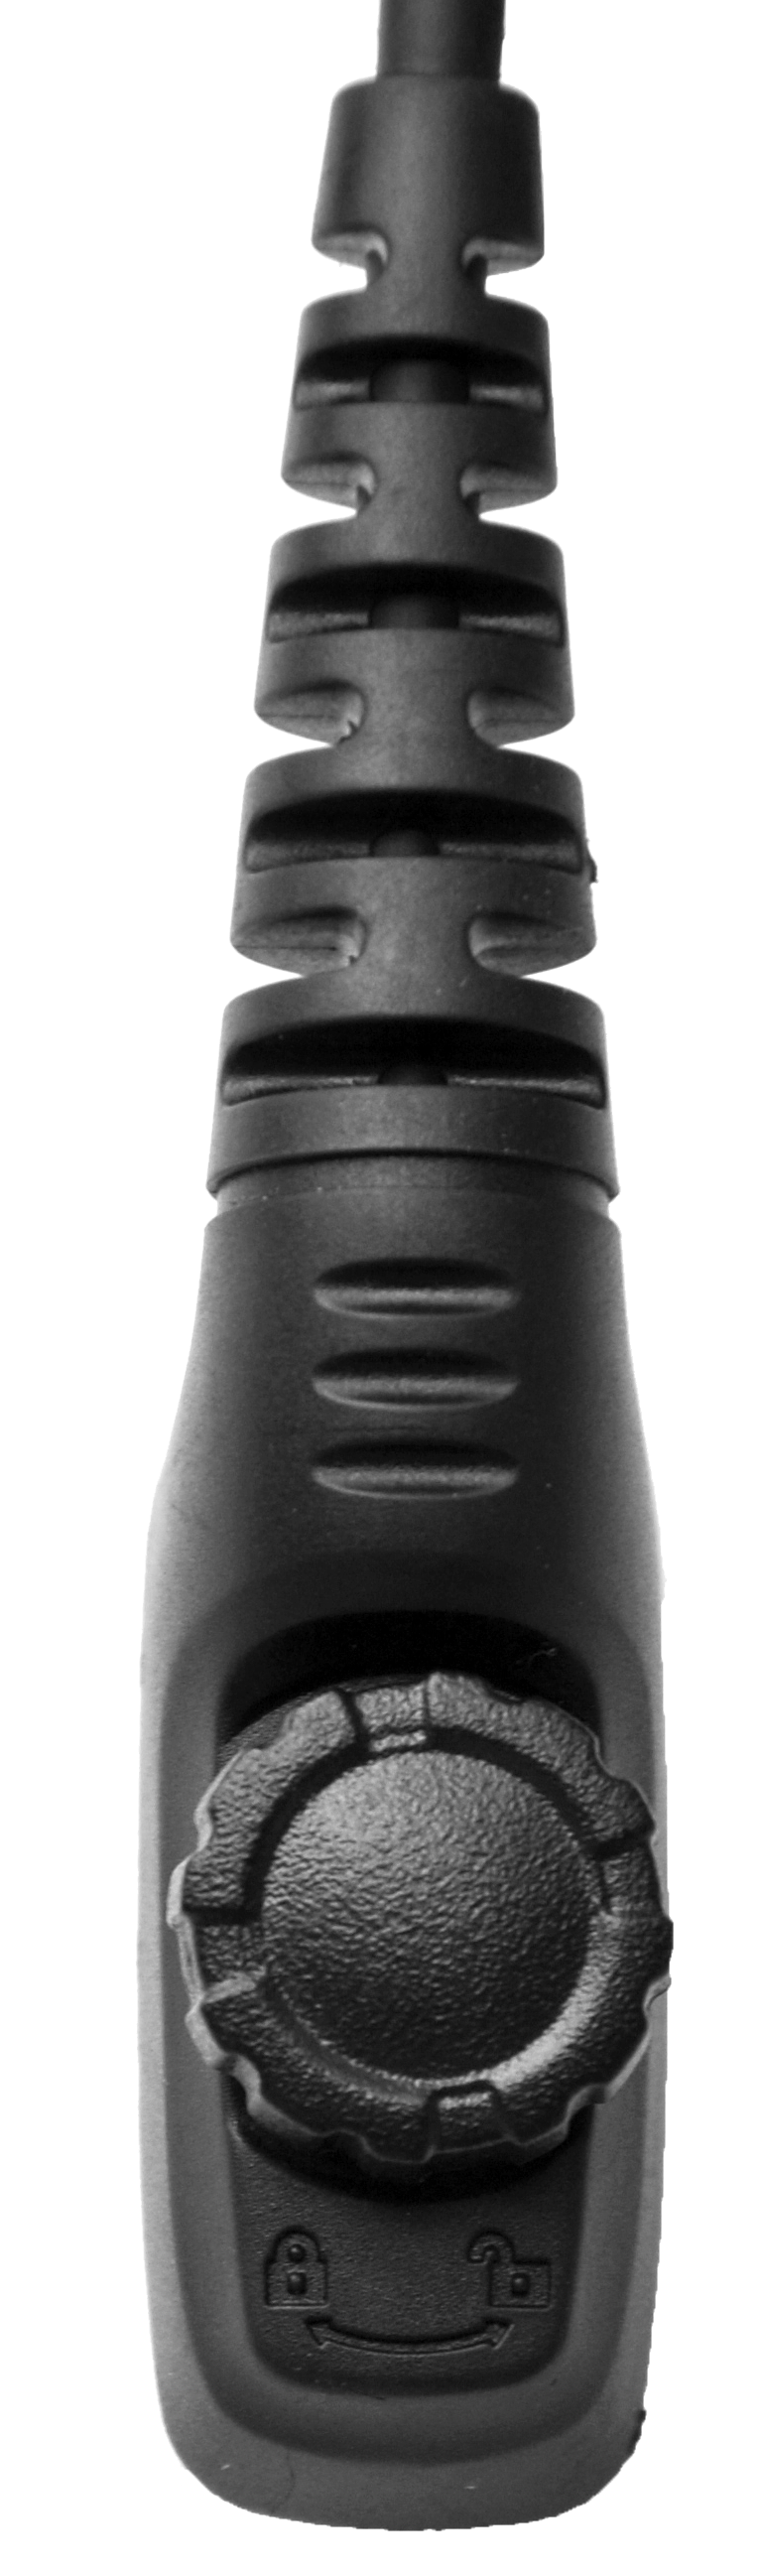 CoPacks Lautsprechermikrofon ES-M01 passend für EADS/ Siemens TPH700